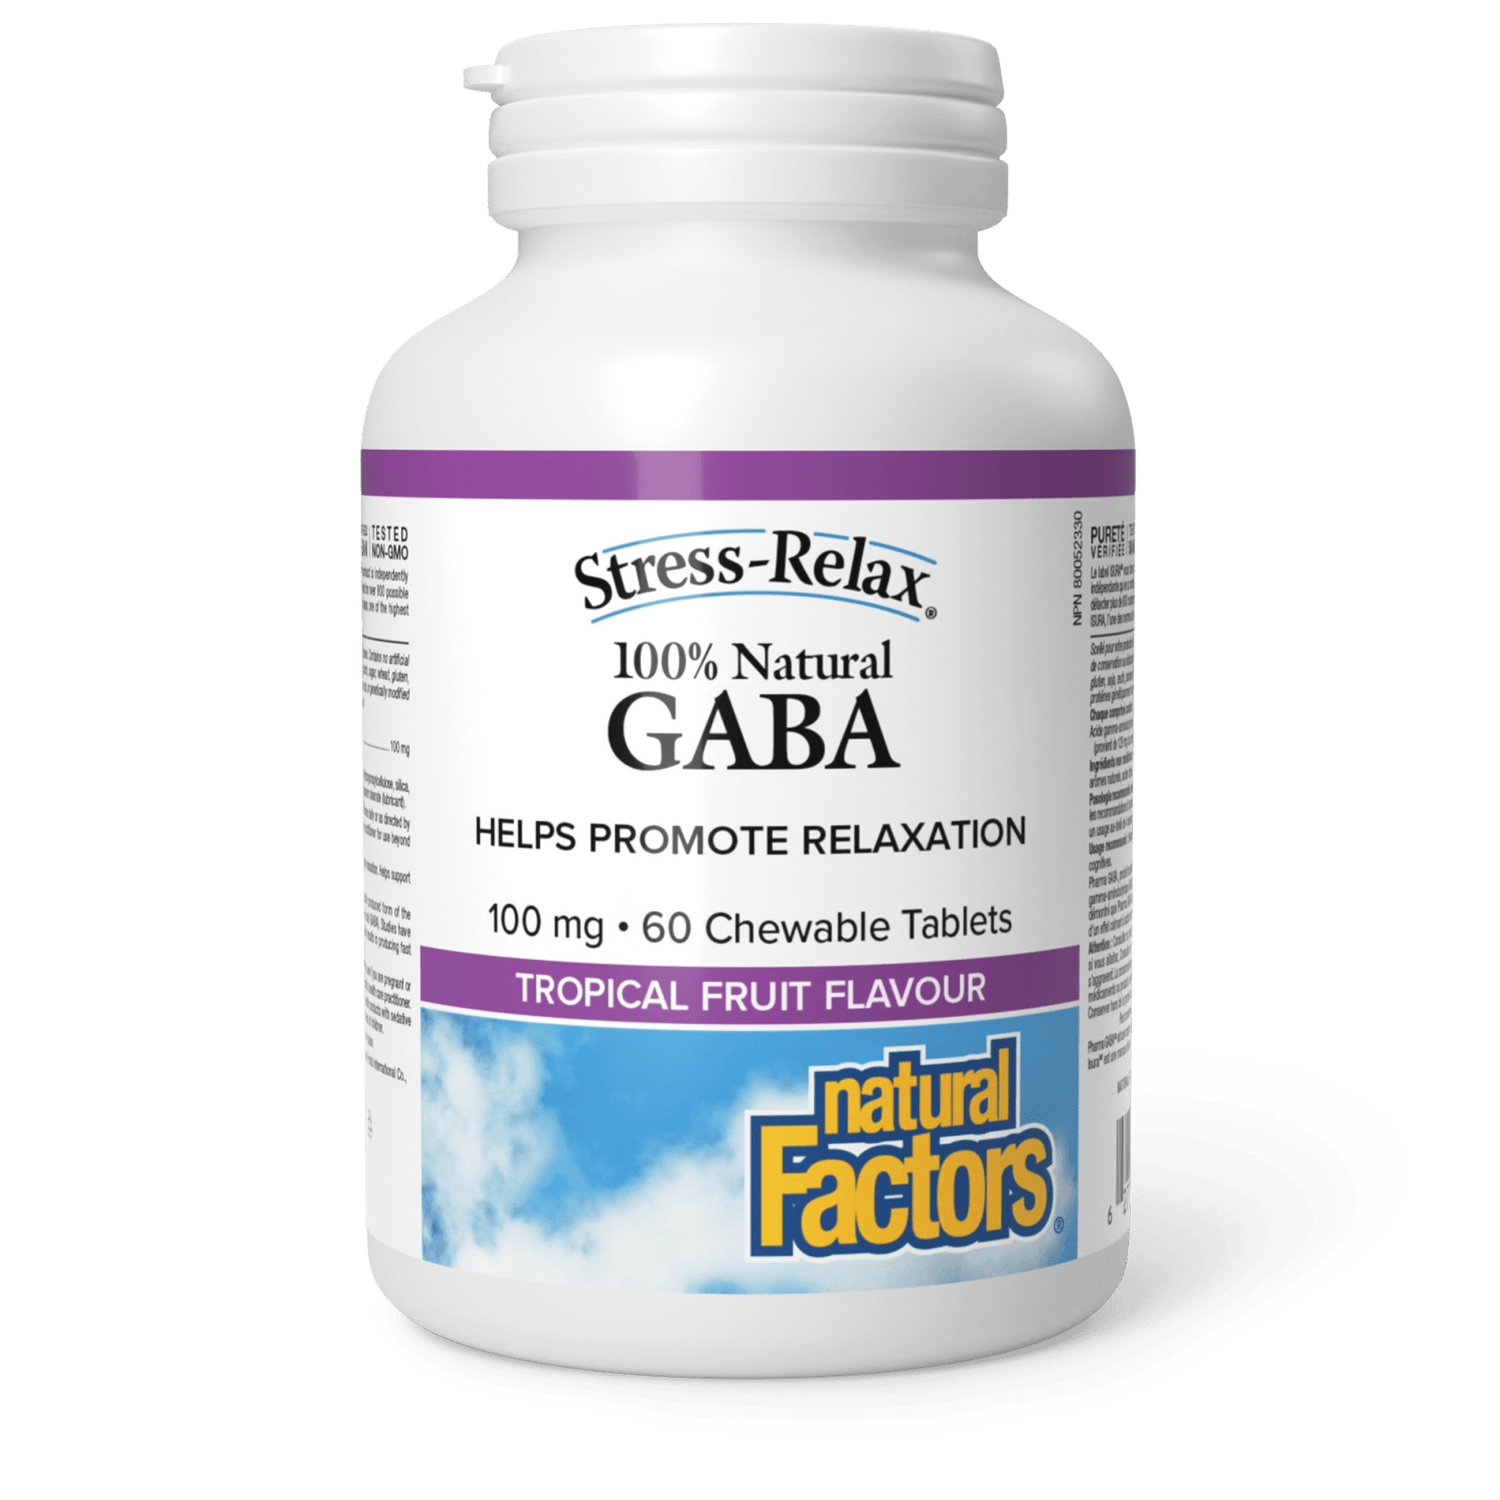 100% Natural GABA 100 mg, Tropical Fruit, Stress-Relax, Natural Factors|v|image|2835